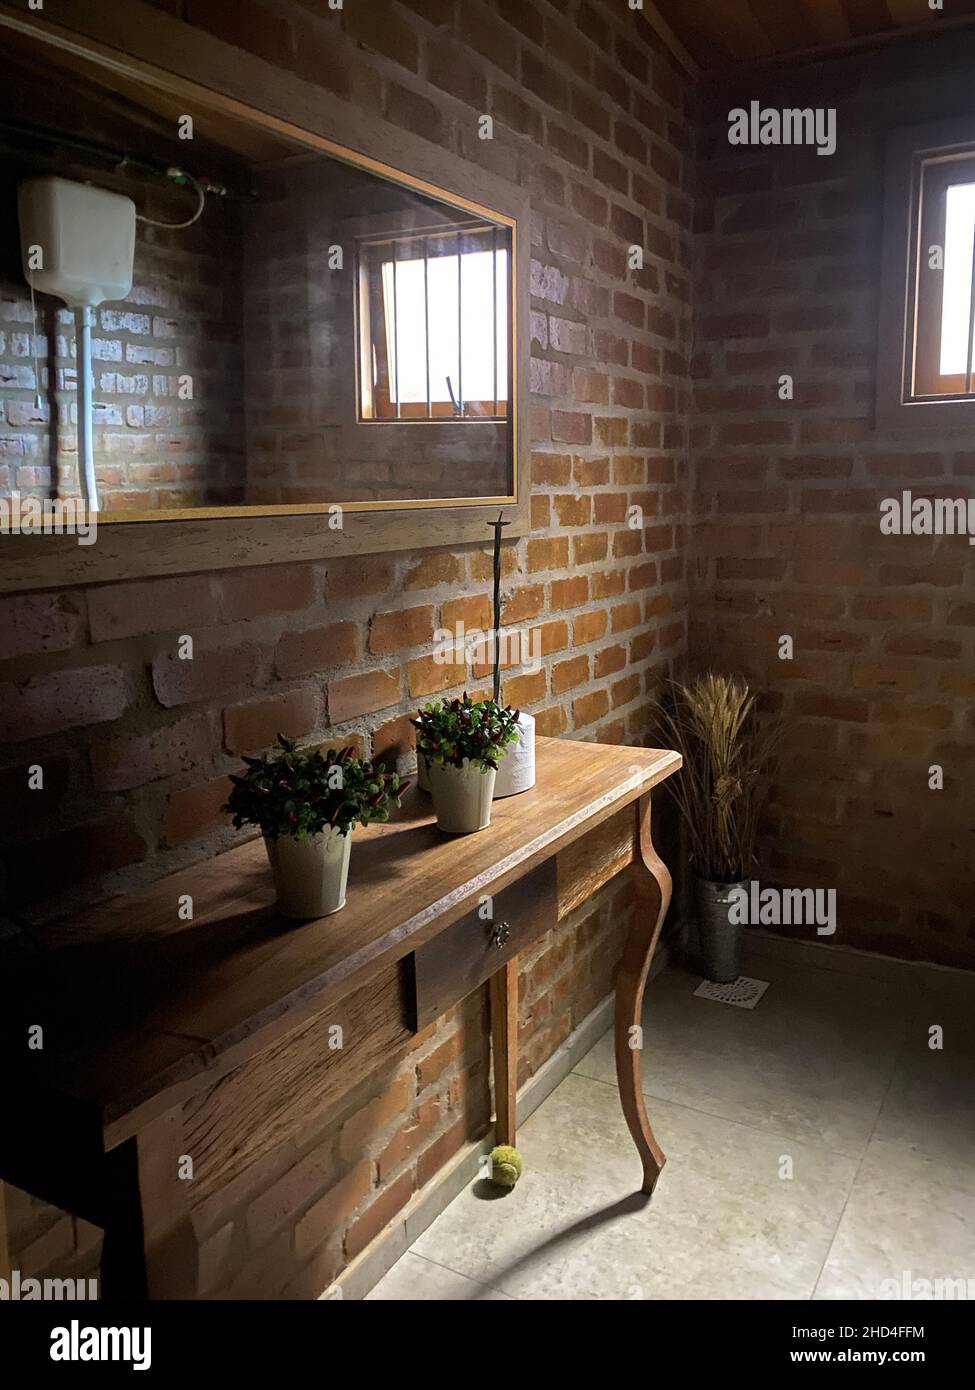 Ein sauberer Stil für die Toilette, ein Spiel von Licht und Schatten runden die Szene ab. Holzmöbel, Spiegel, einfache Linien, minimalistischer Stil. Stockfoto